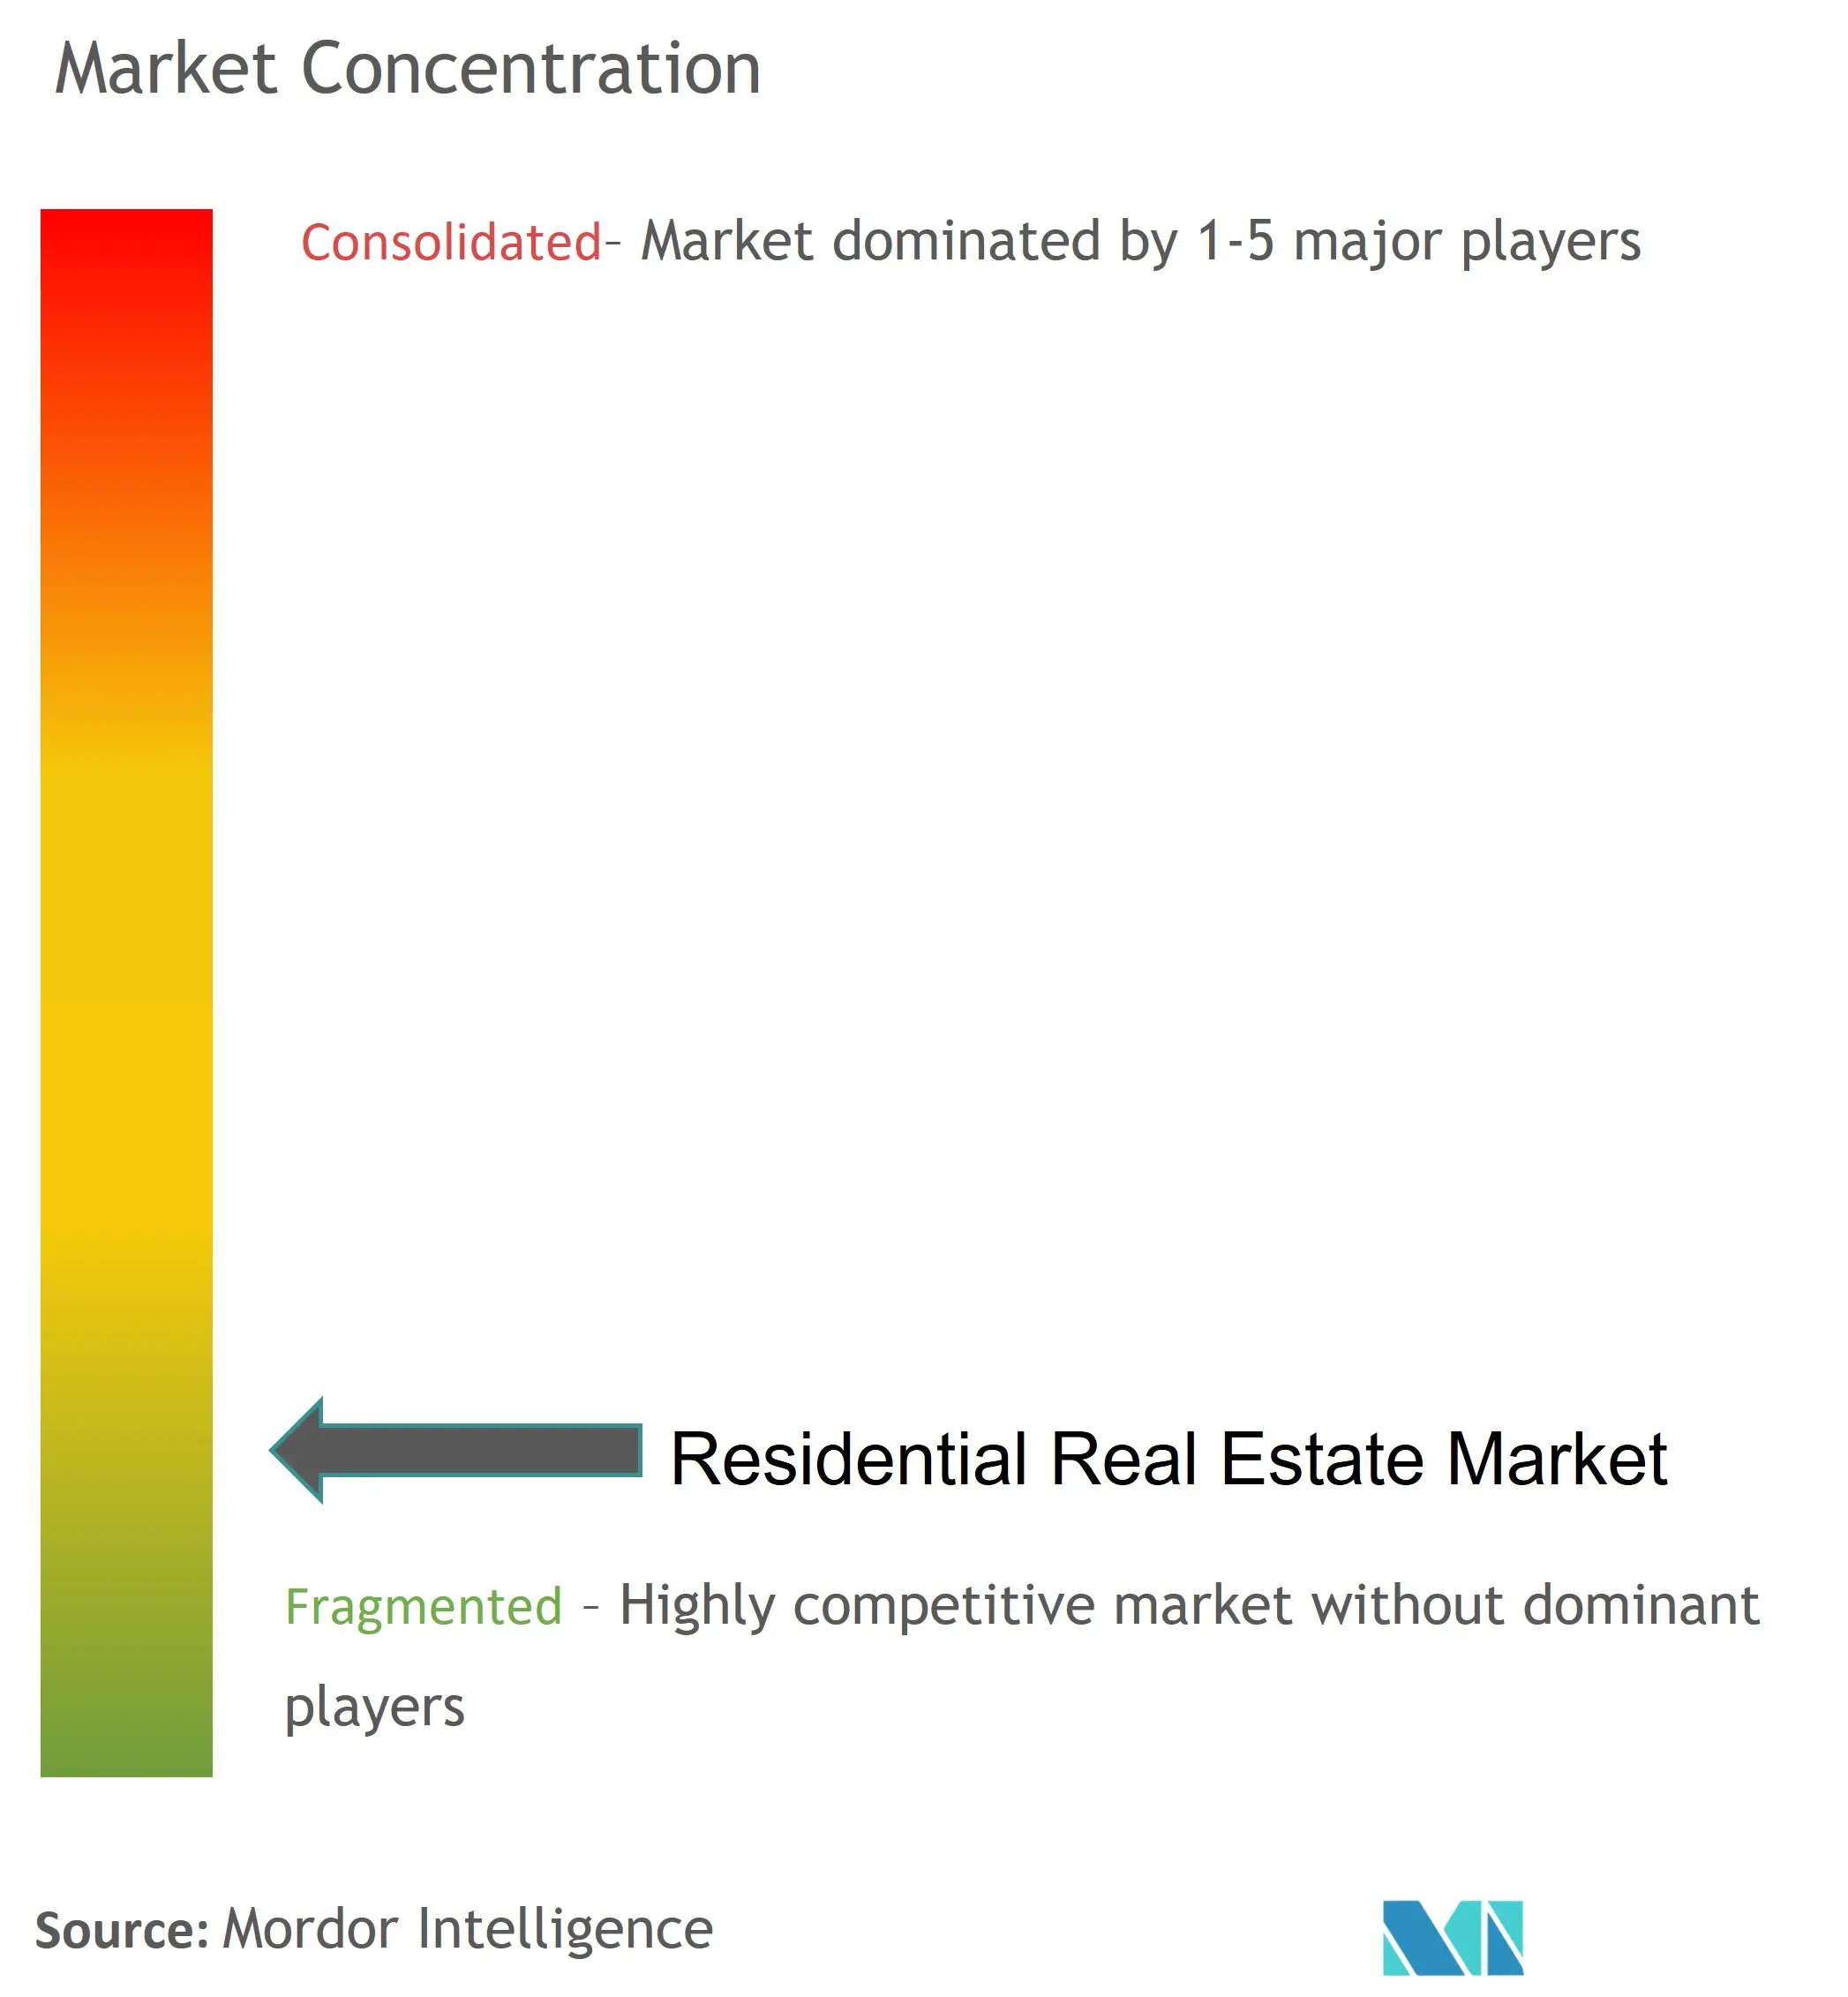 Sự tập trung của thị trường bất động sản nhà ở